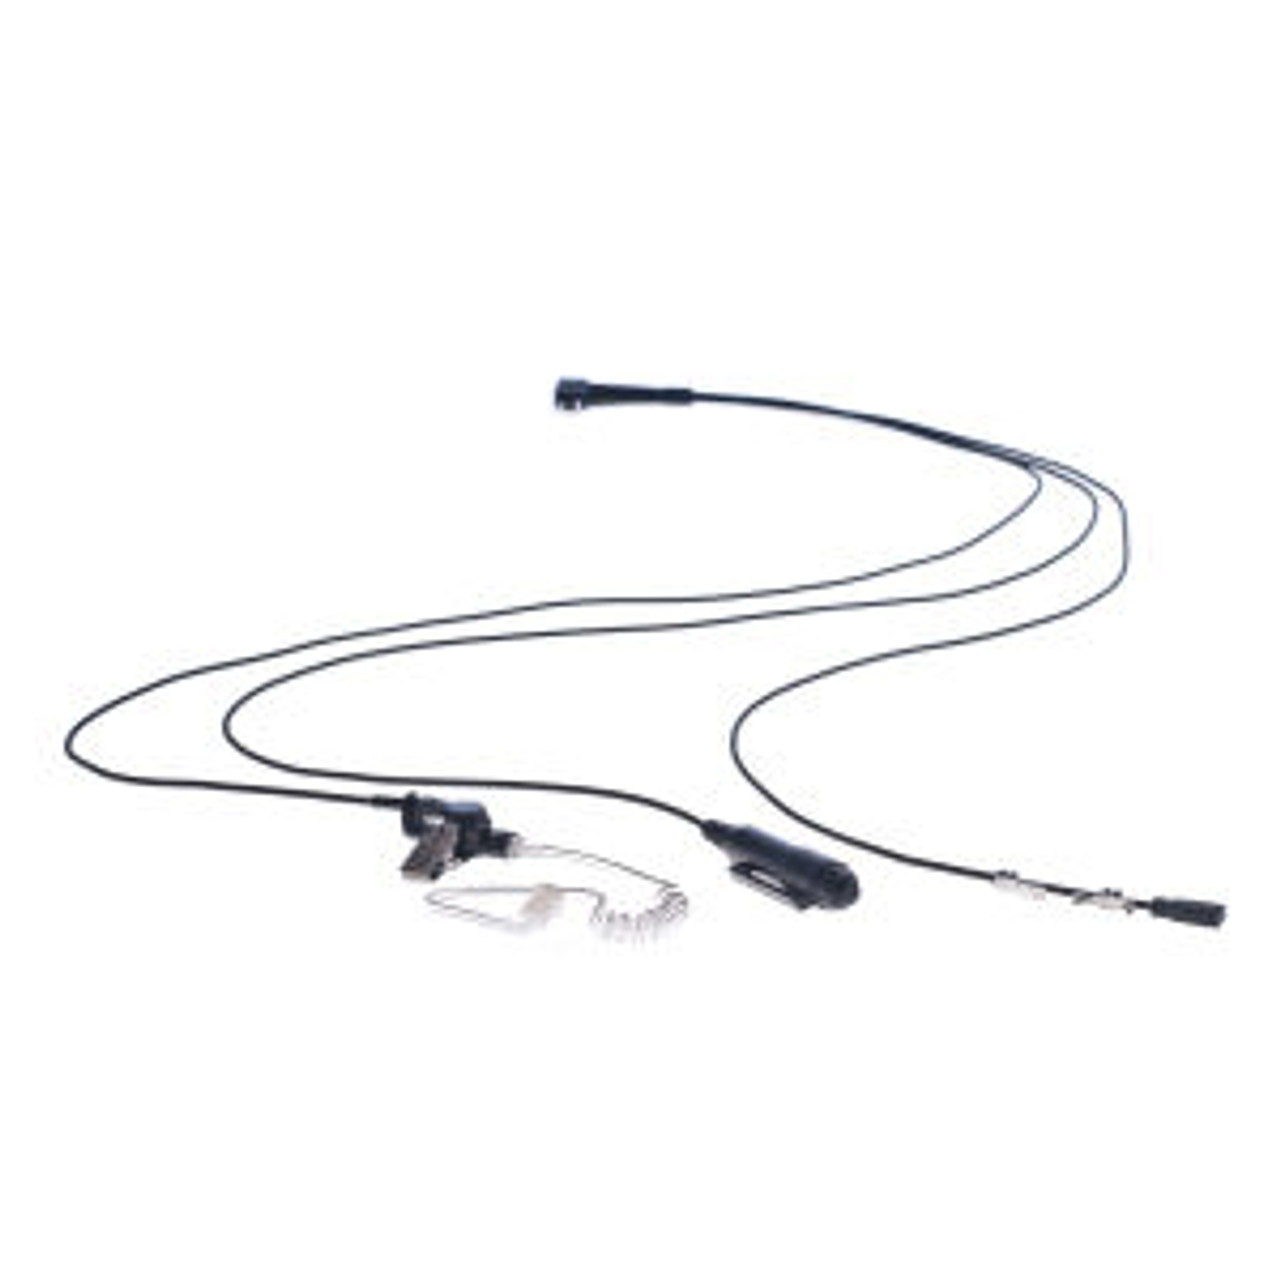 Harris P7100 3-Wire Surveillance Kit